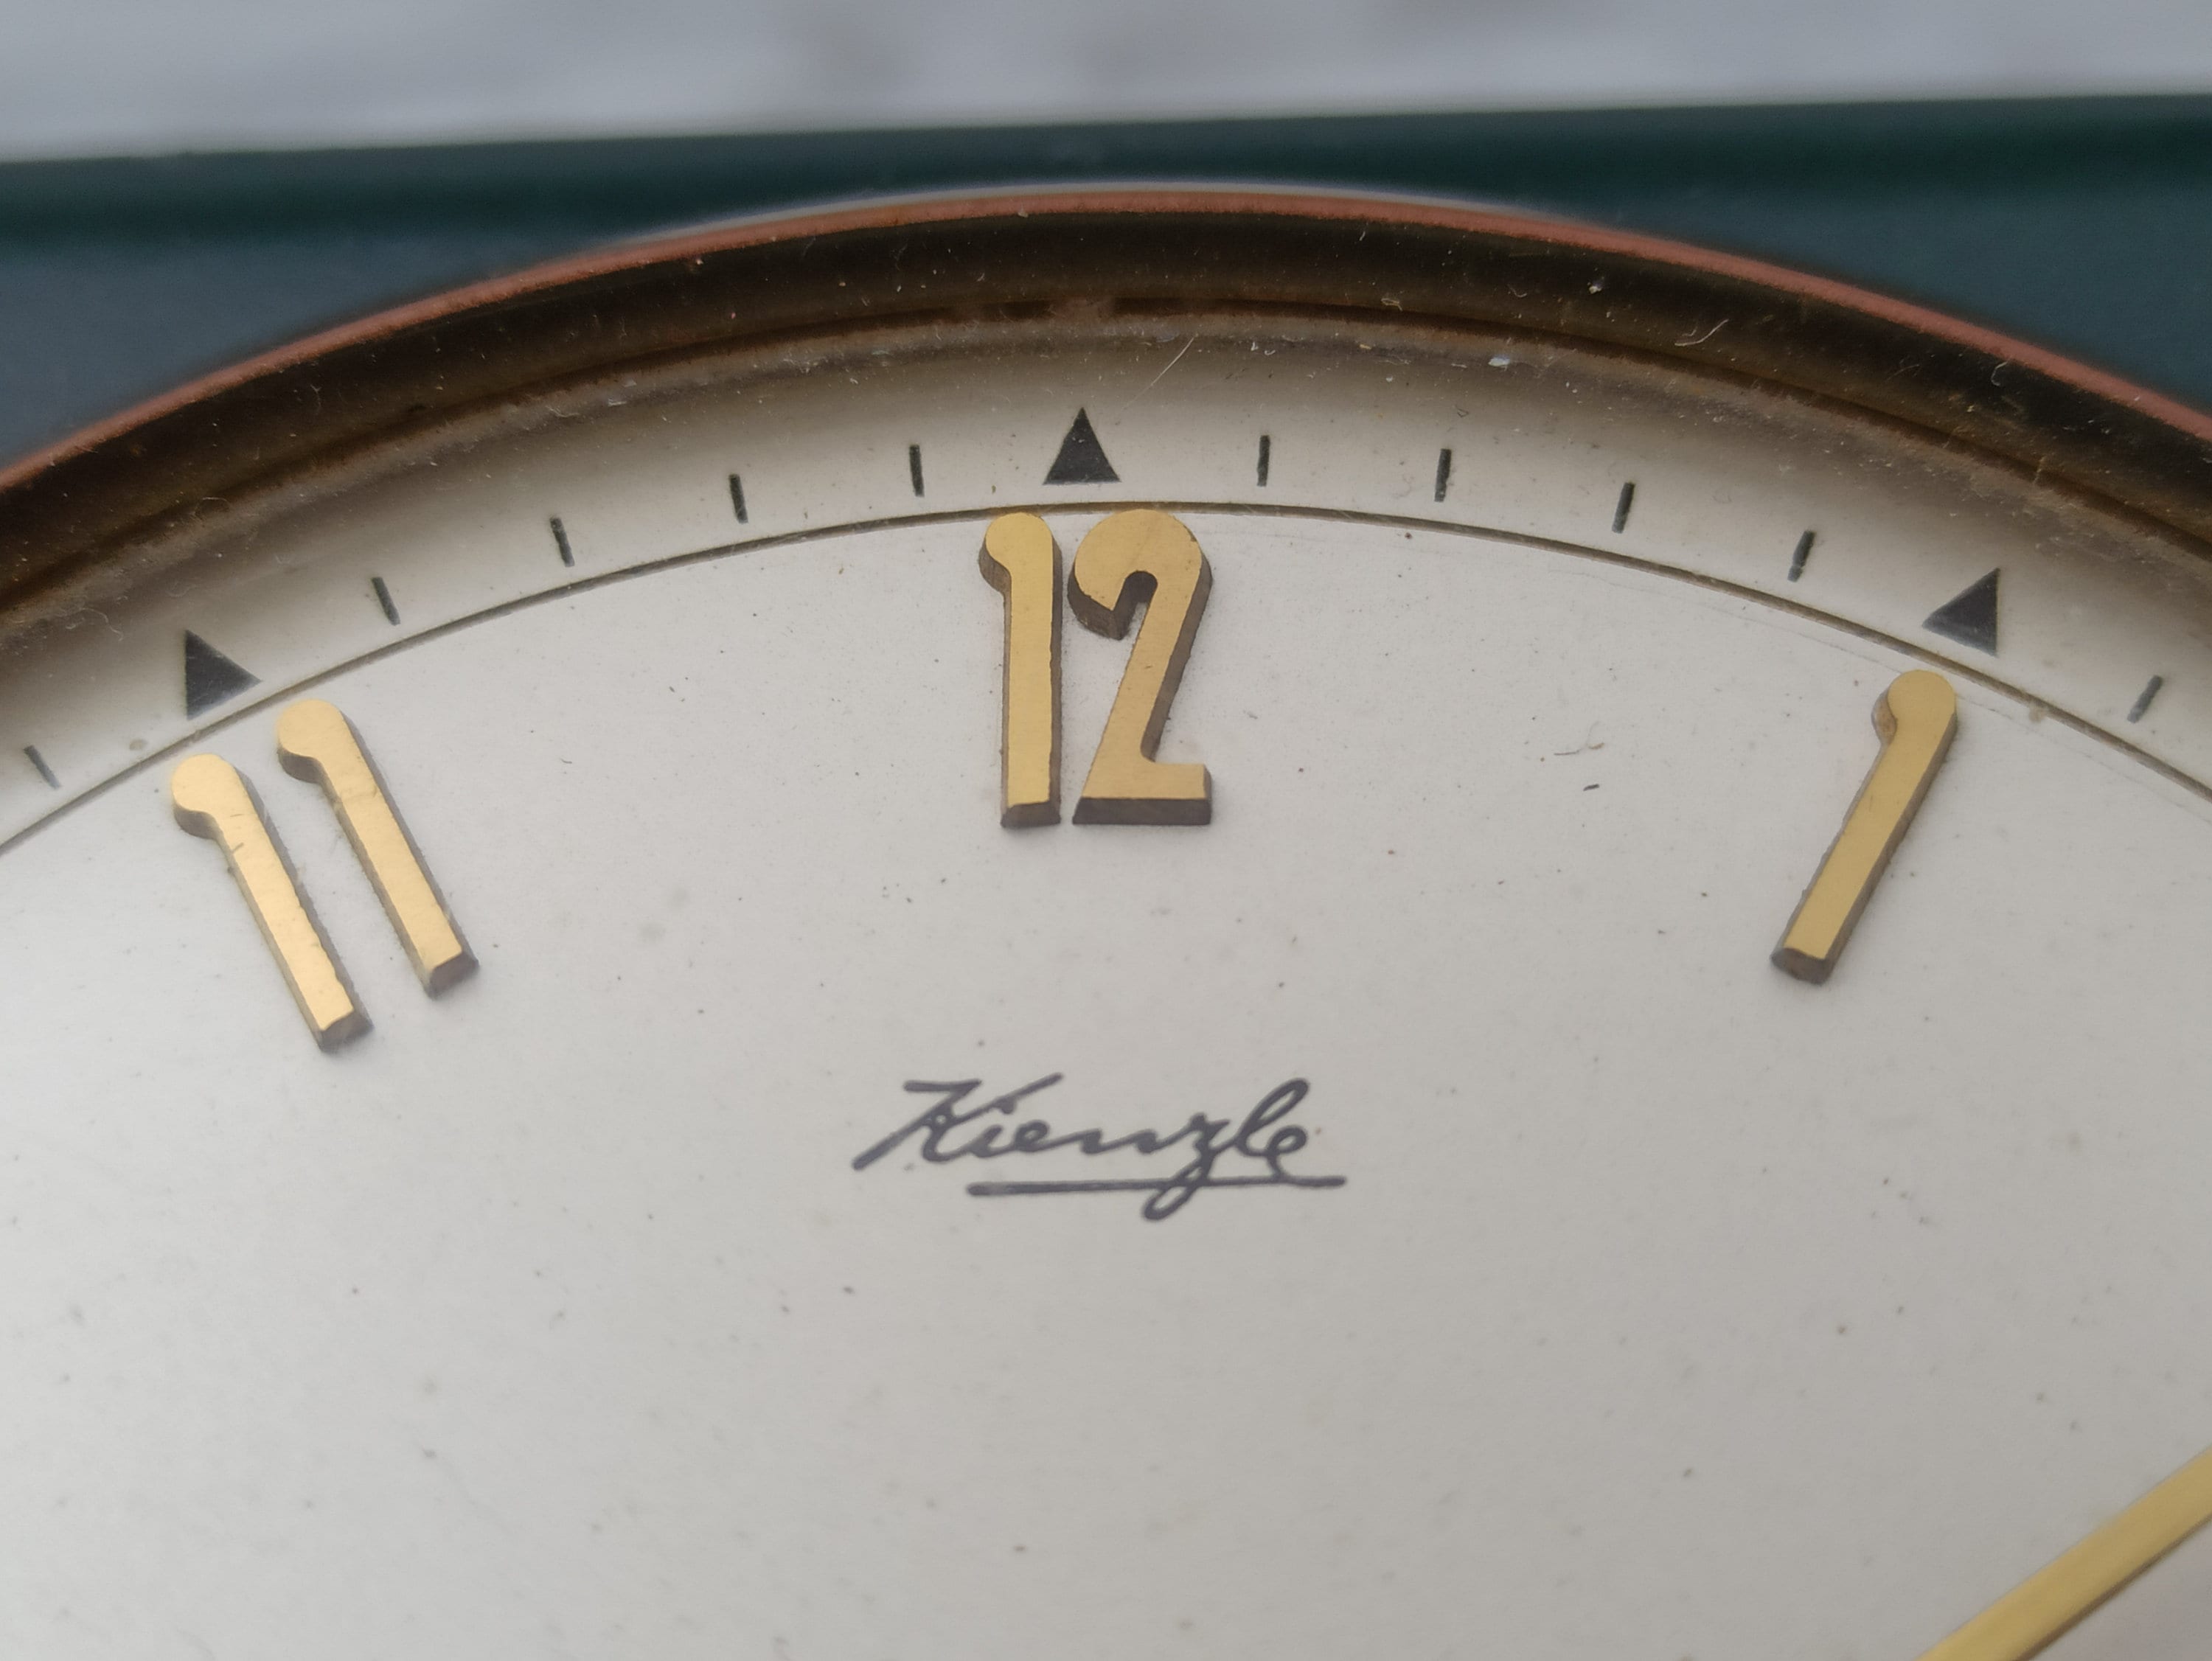 Vintage Tischuhr Kienzle / Mechanische Uhr für den Schreibtisch / 1950er  Jahre / Schreibtischuhr / Jubiläumsgeschenk, Online Shop